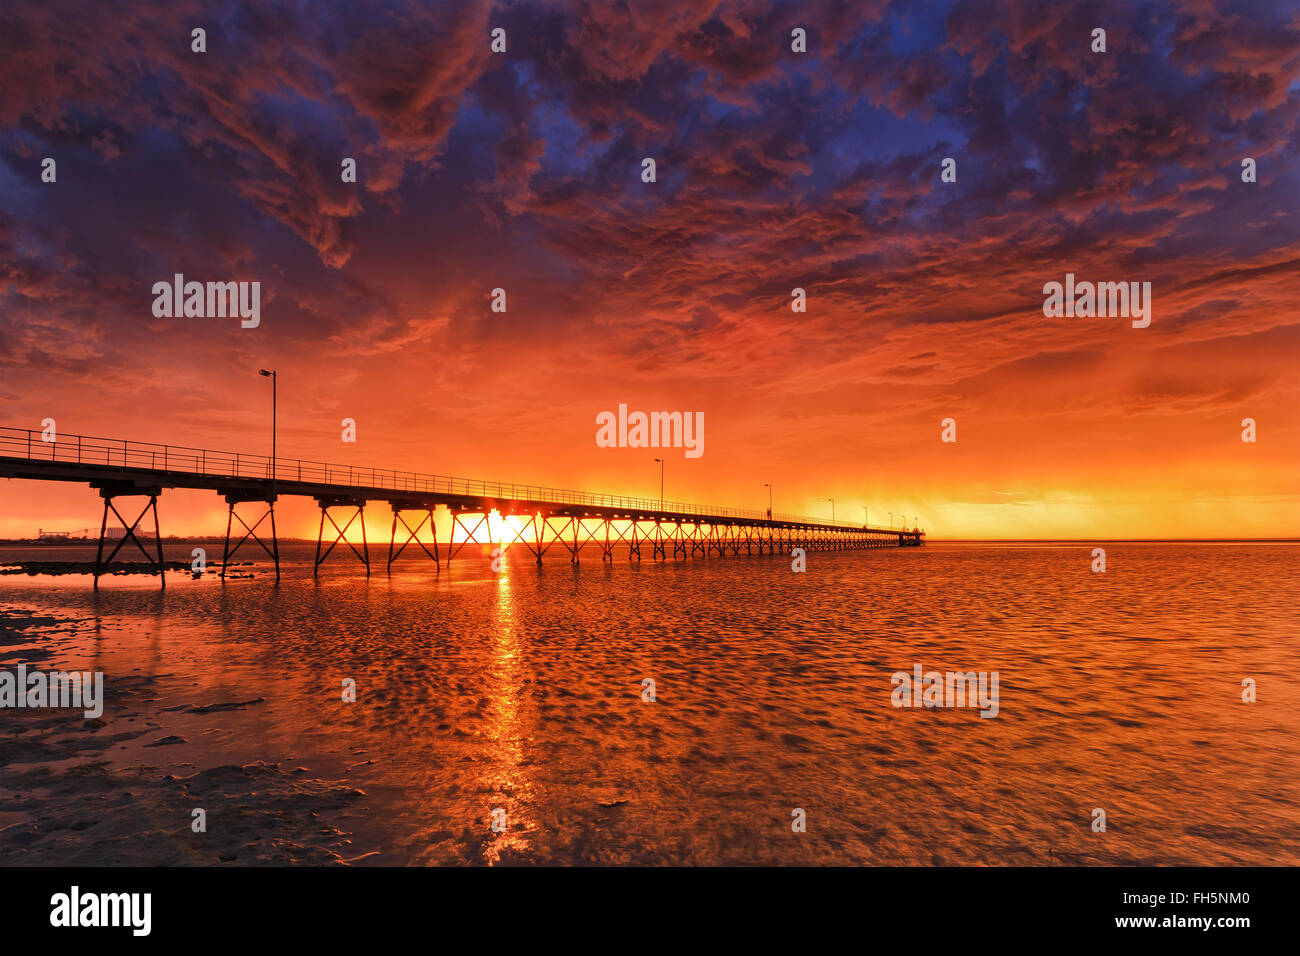 Holz in kleinen Küstenort Ceduna bei schweren Sturm bei orange Sonnenuntergang Steg. Bewölkter Himmel spiegelt sich in stürmischen Zeiten der Fischerei Stockfoto